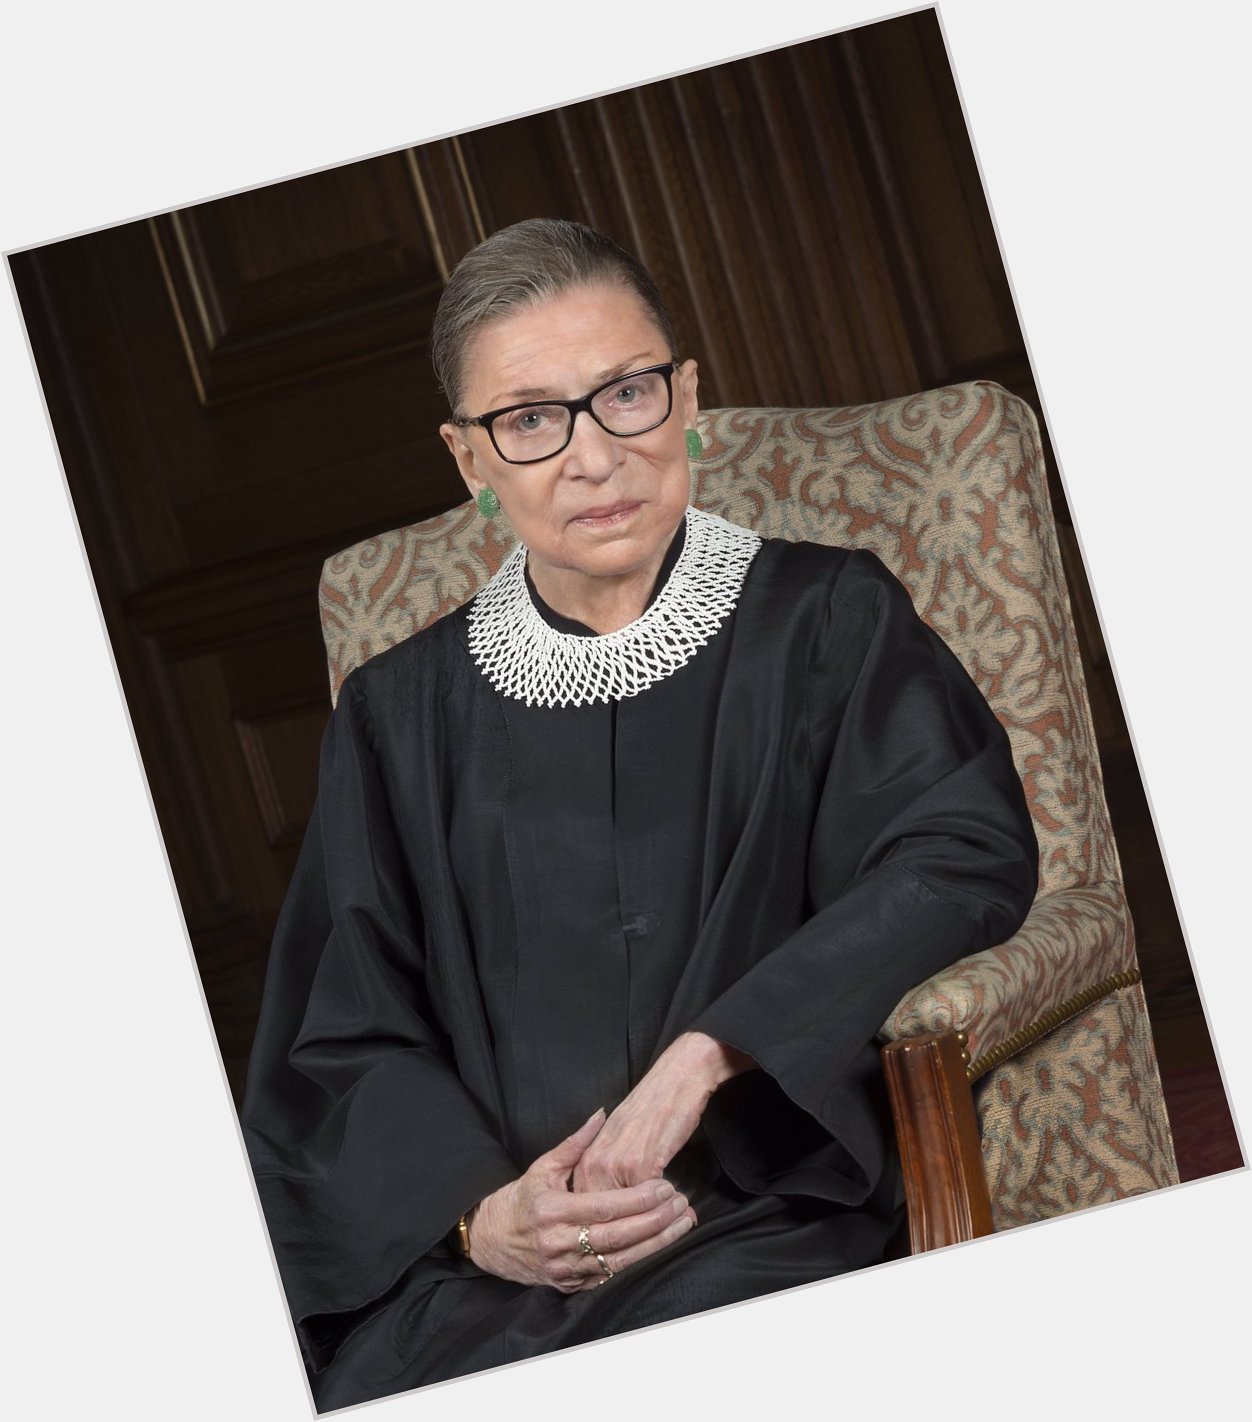 Happy birthday, Justice Ruth Bader Ginsburg!  